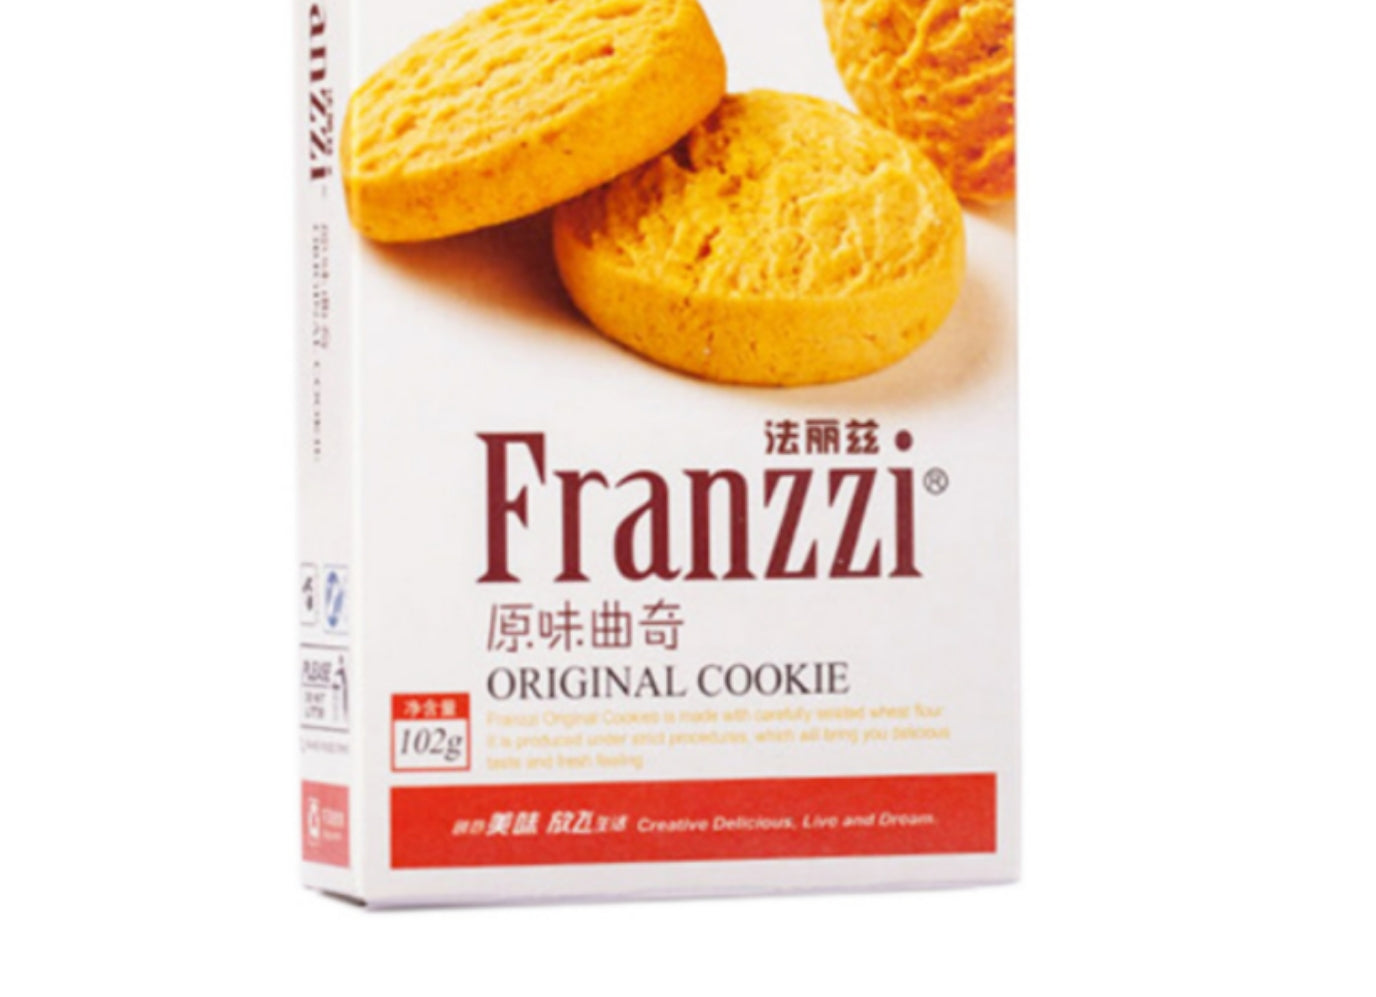 Franzzi Original Cookie